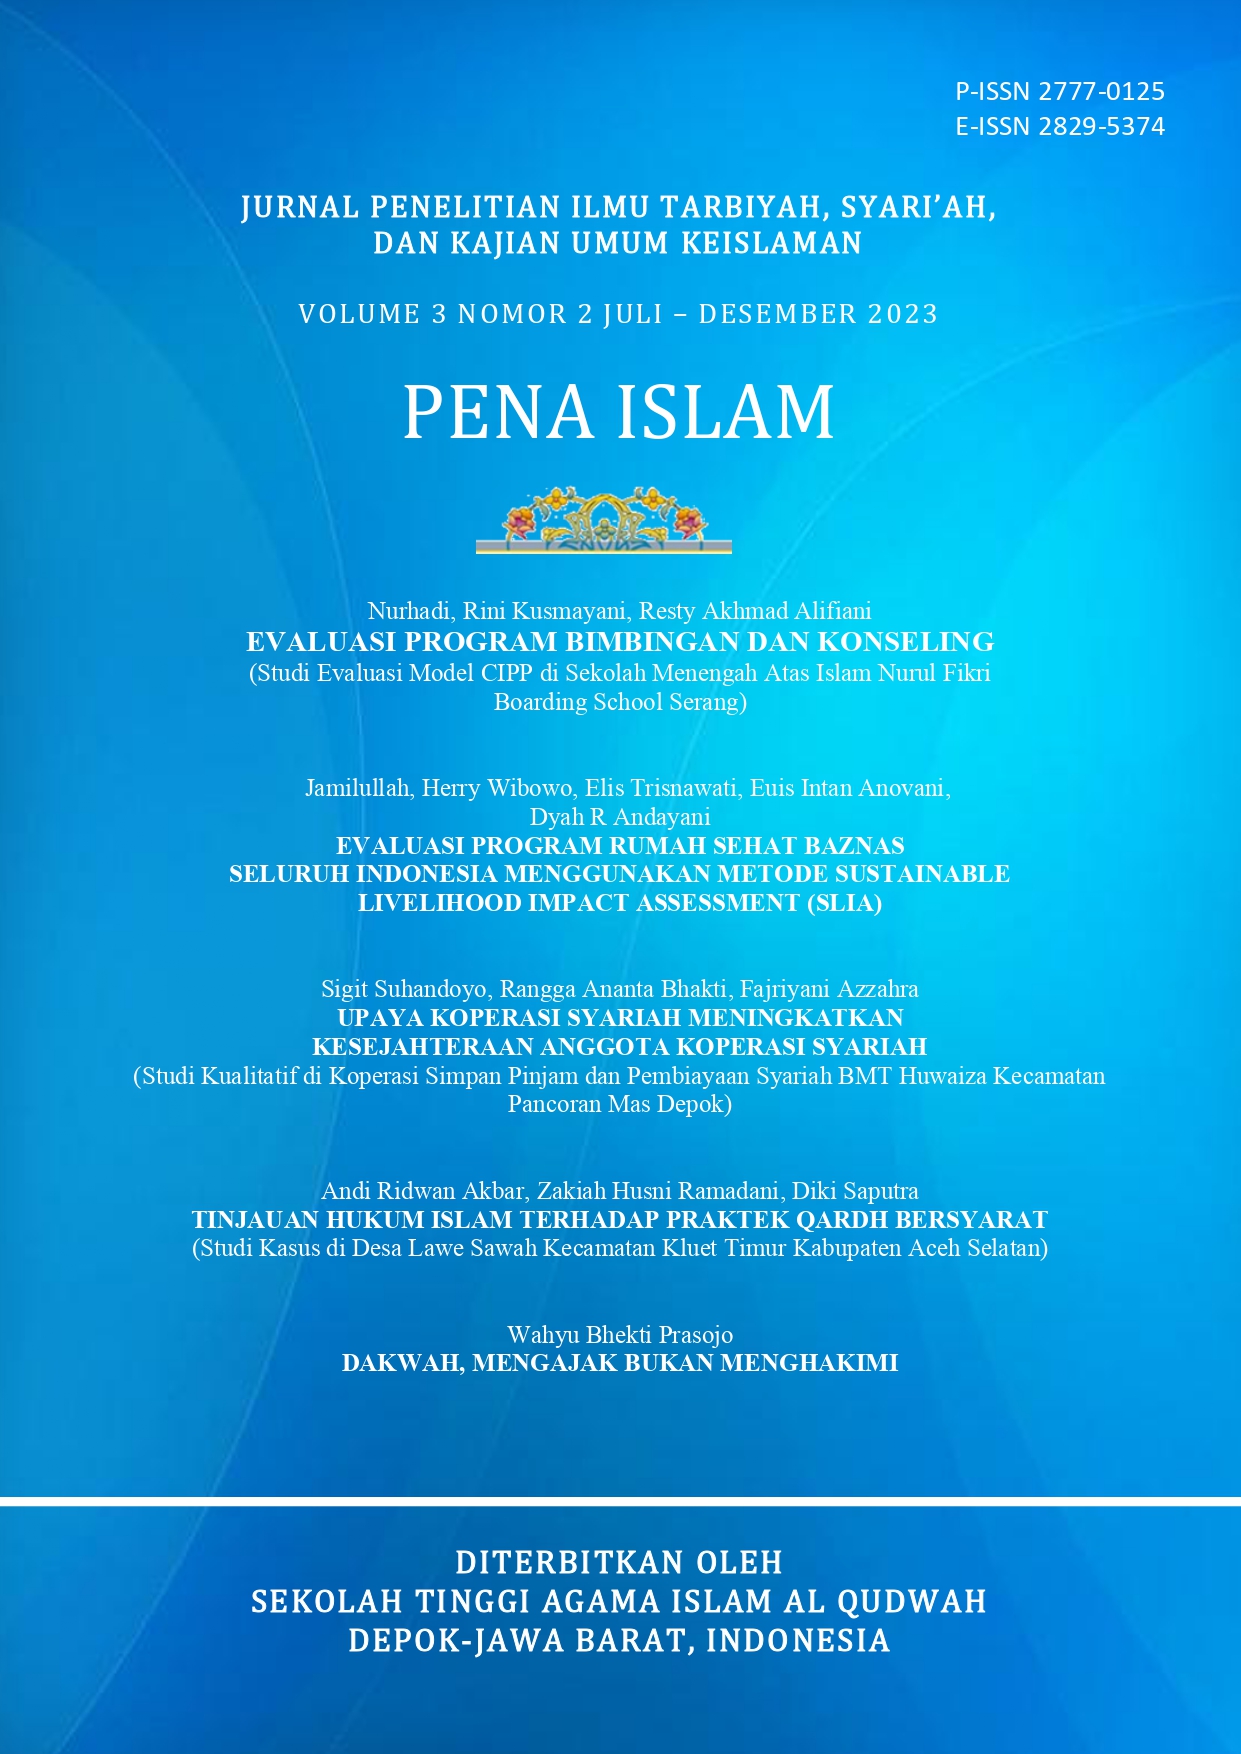 					Lihat Vol 3 No 2 (2023): JURNAL PENA ISLAM VOLUME 3 NOMOR 2 JULI - DESEMBER 2023
				